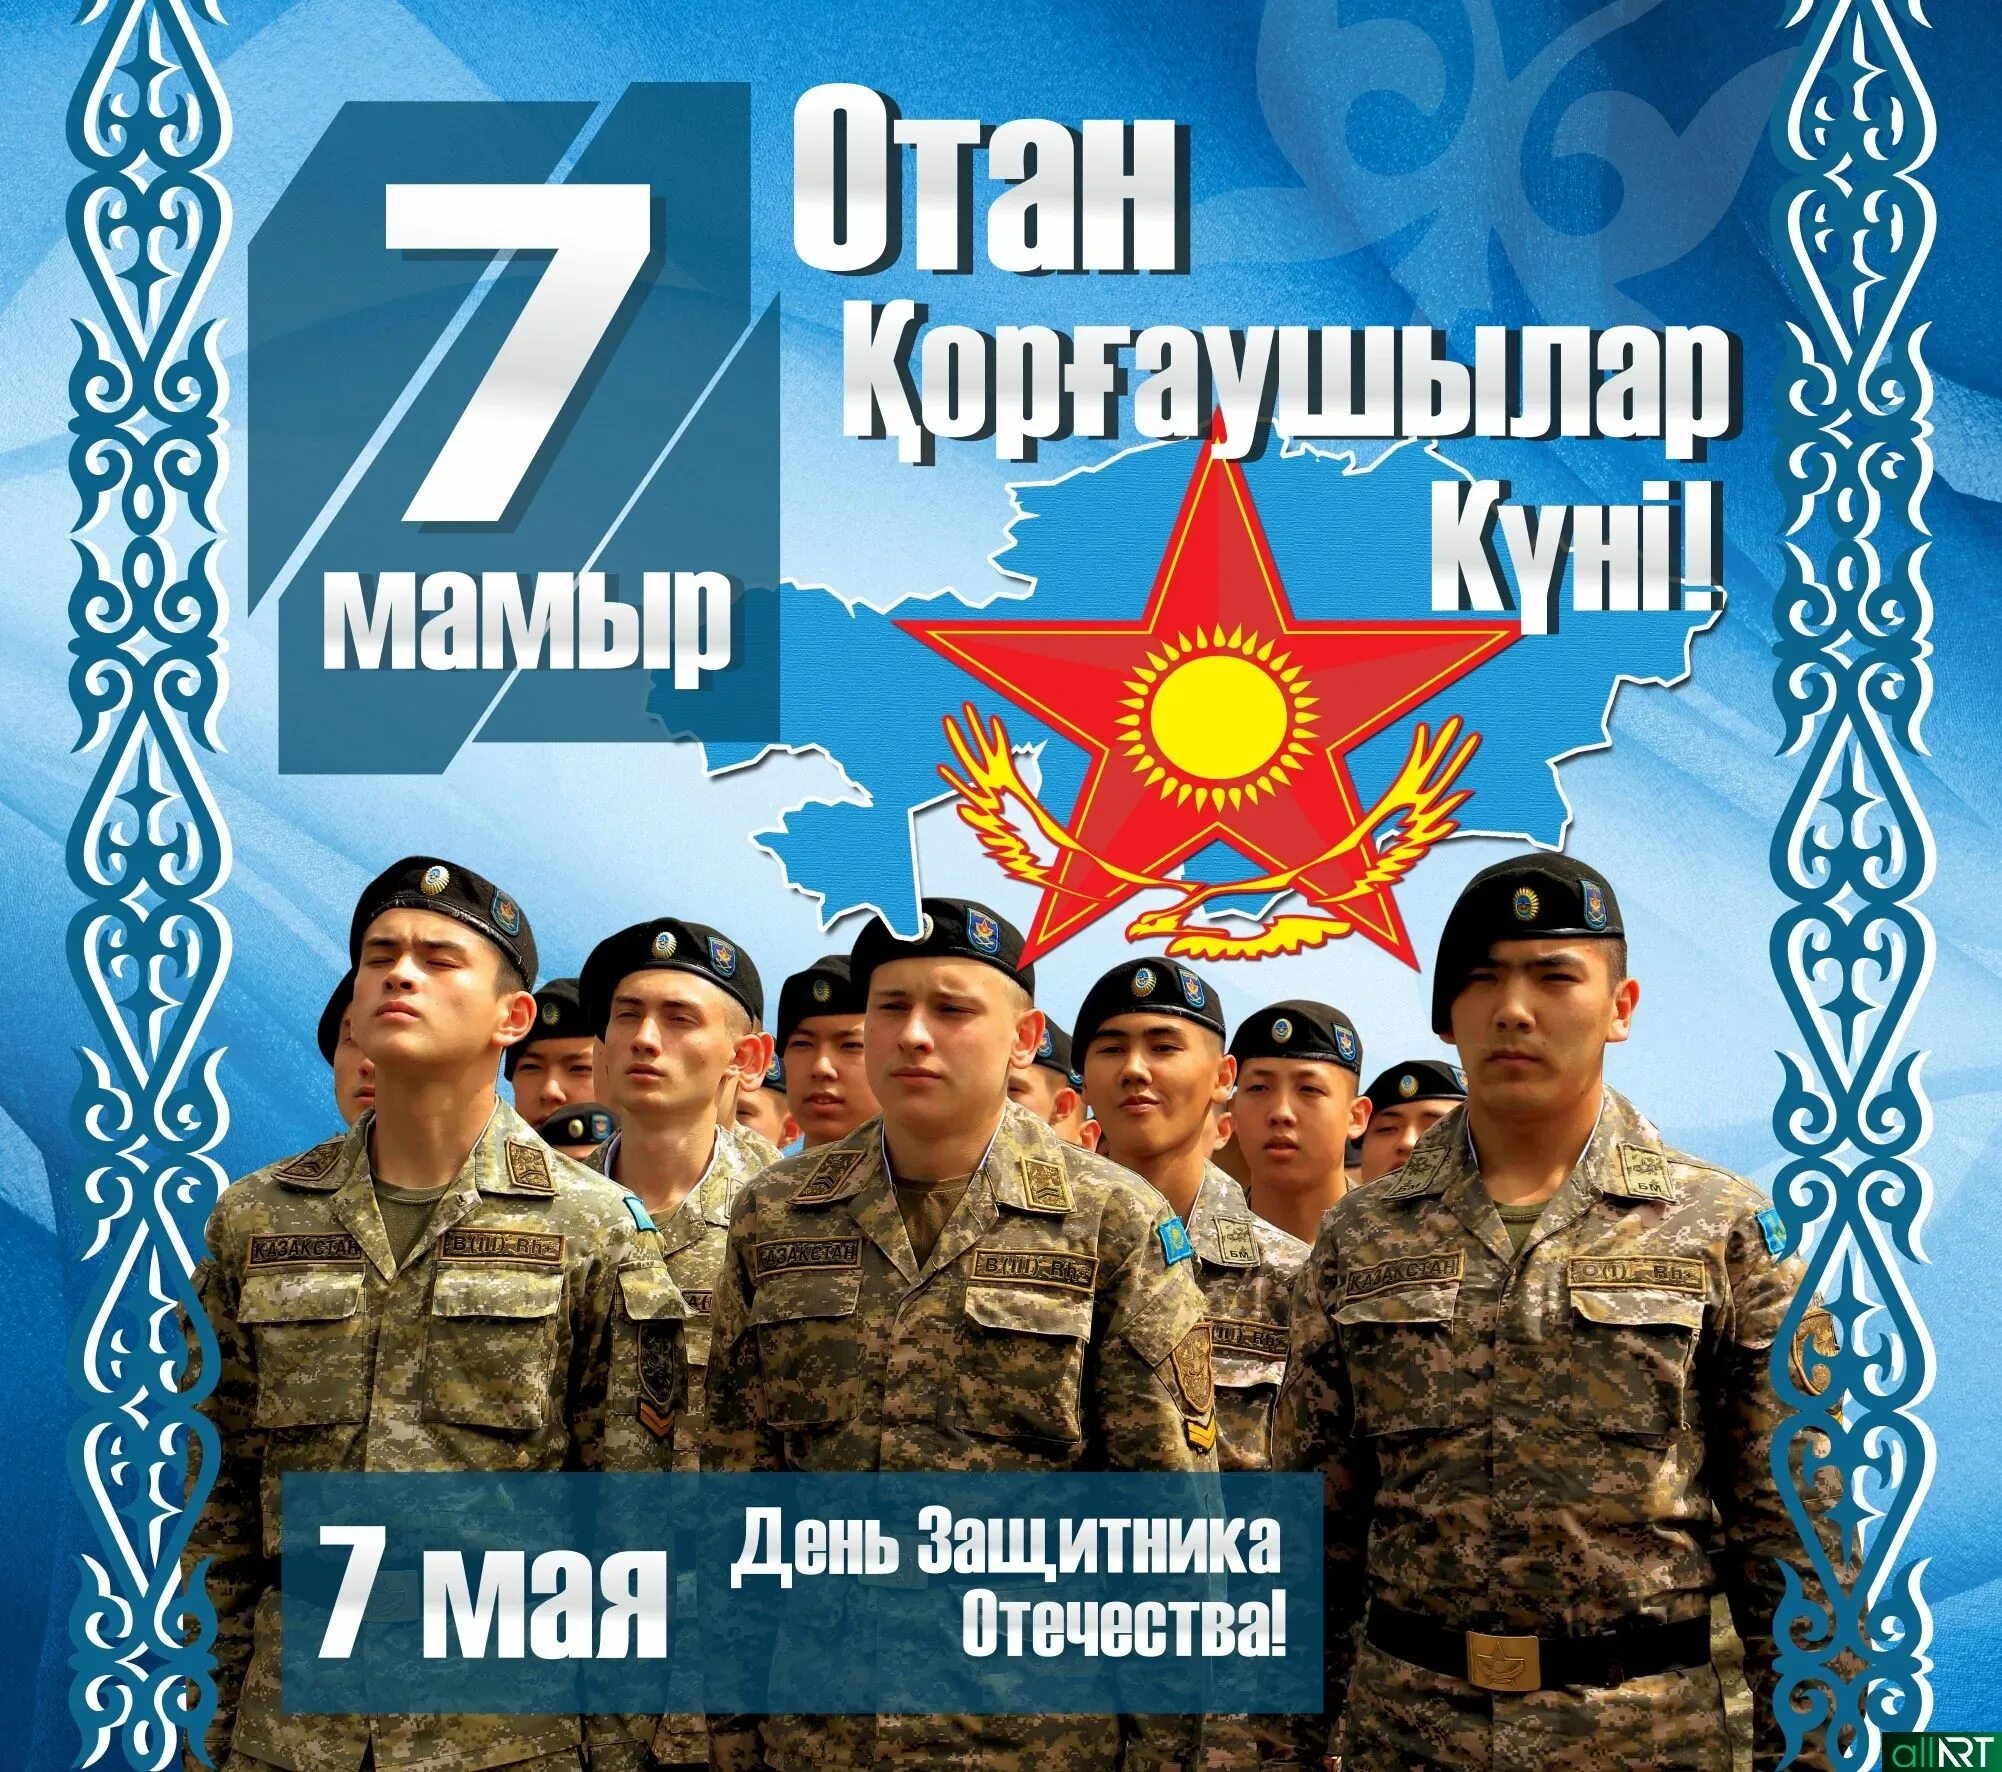 7 мая день защитника казахстана. День защитника Отечества Казахстан. 7 Мая праздник. 7 Мая день защитника Отечества. 7 Мая день защитника Отечества в Казахстане.